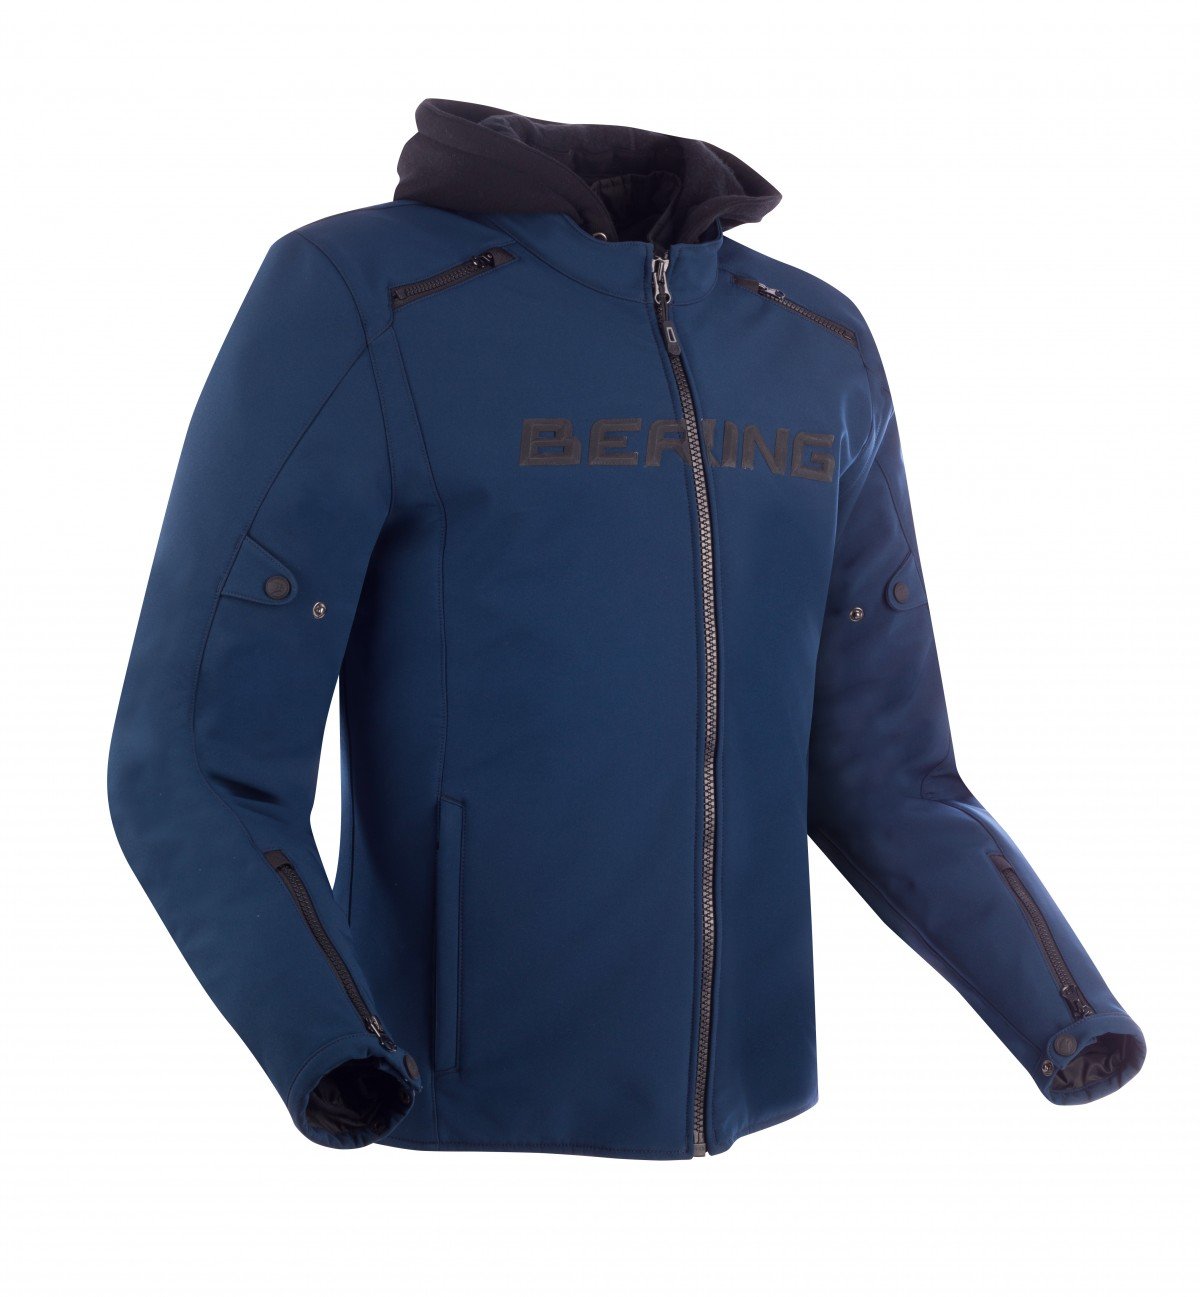 Image of Bering Elite Jacket Navy Blue Size L EN